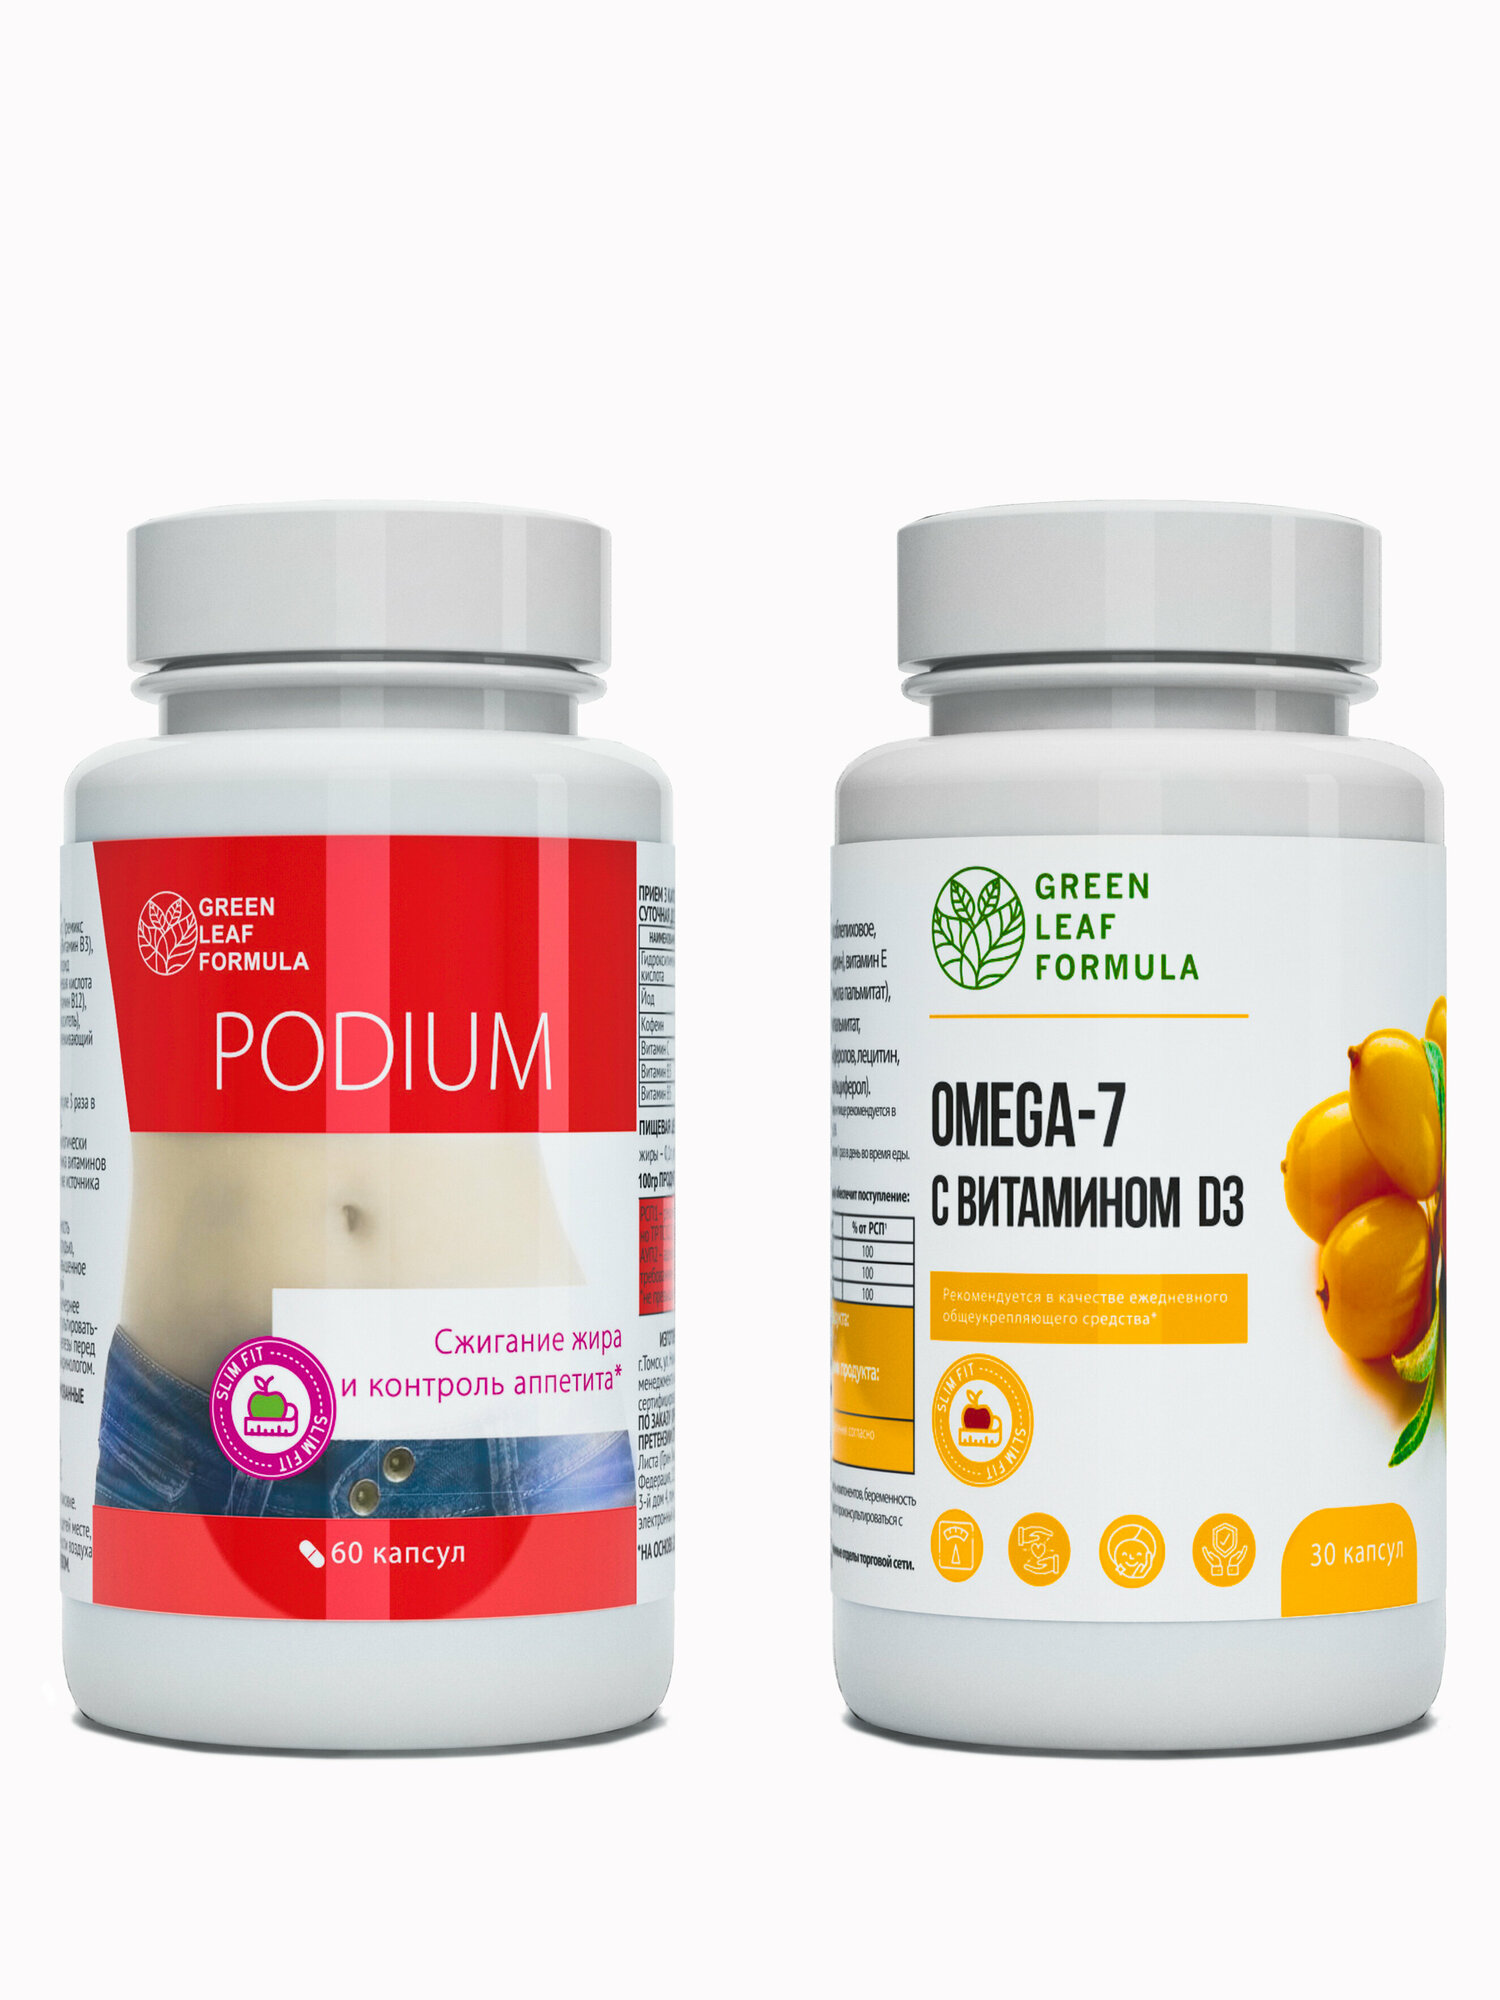 Таблетки для похудения PODIUM и омега 7 (ПОК), для снижения аппетита и веса, для микрофлоры кишечника, для иммунитета, масло черного тмина